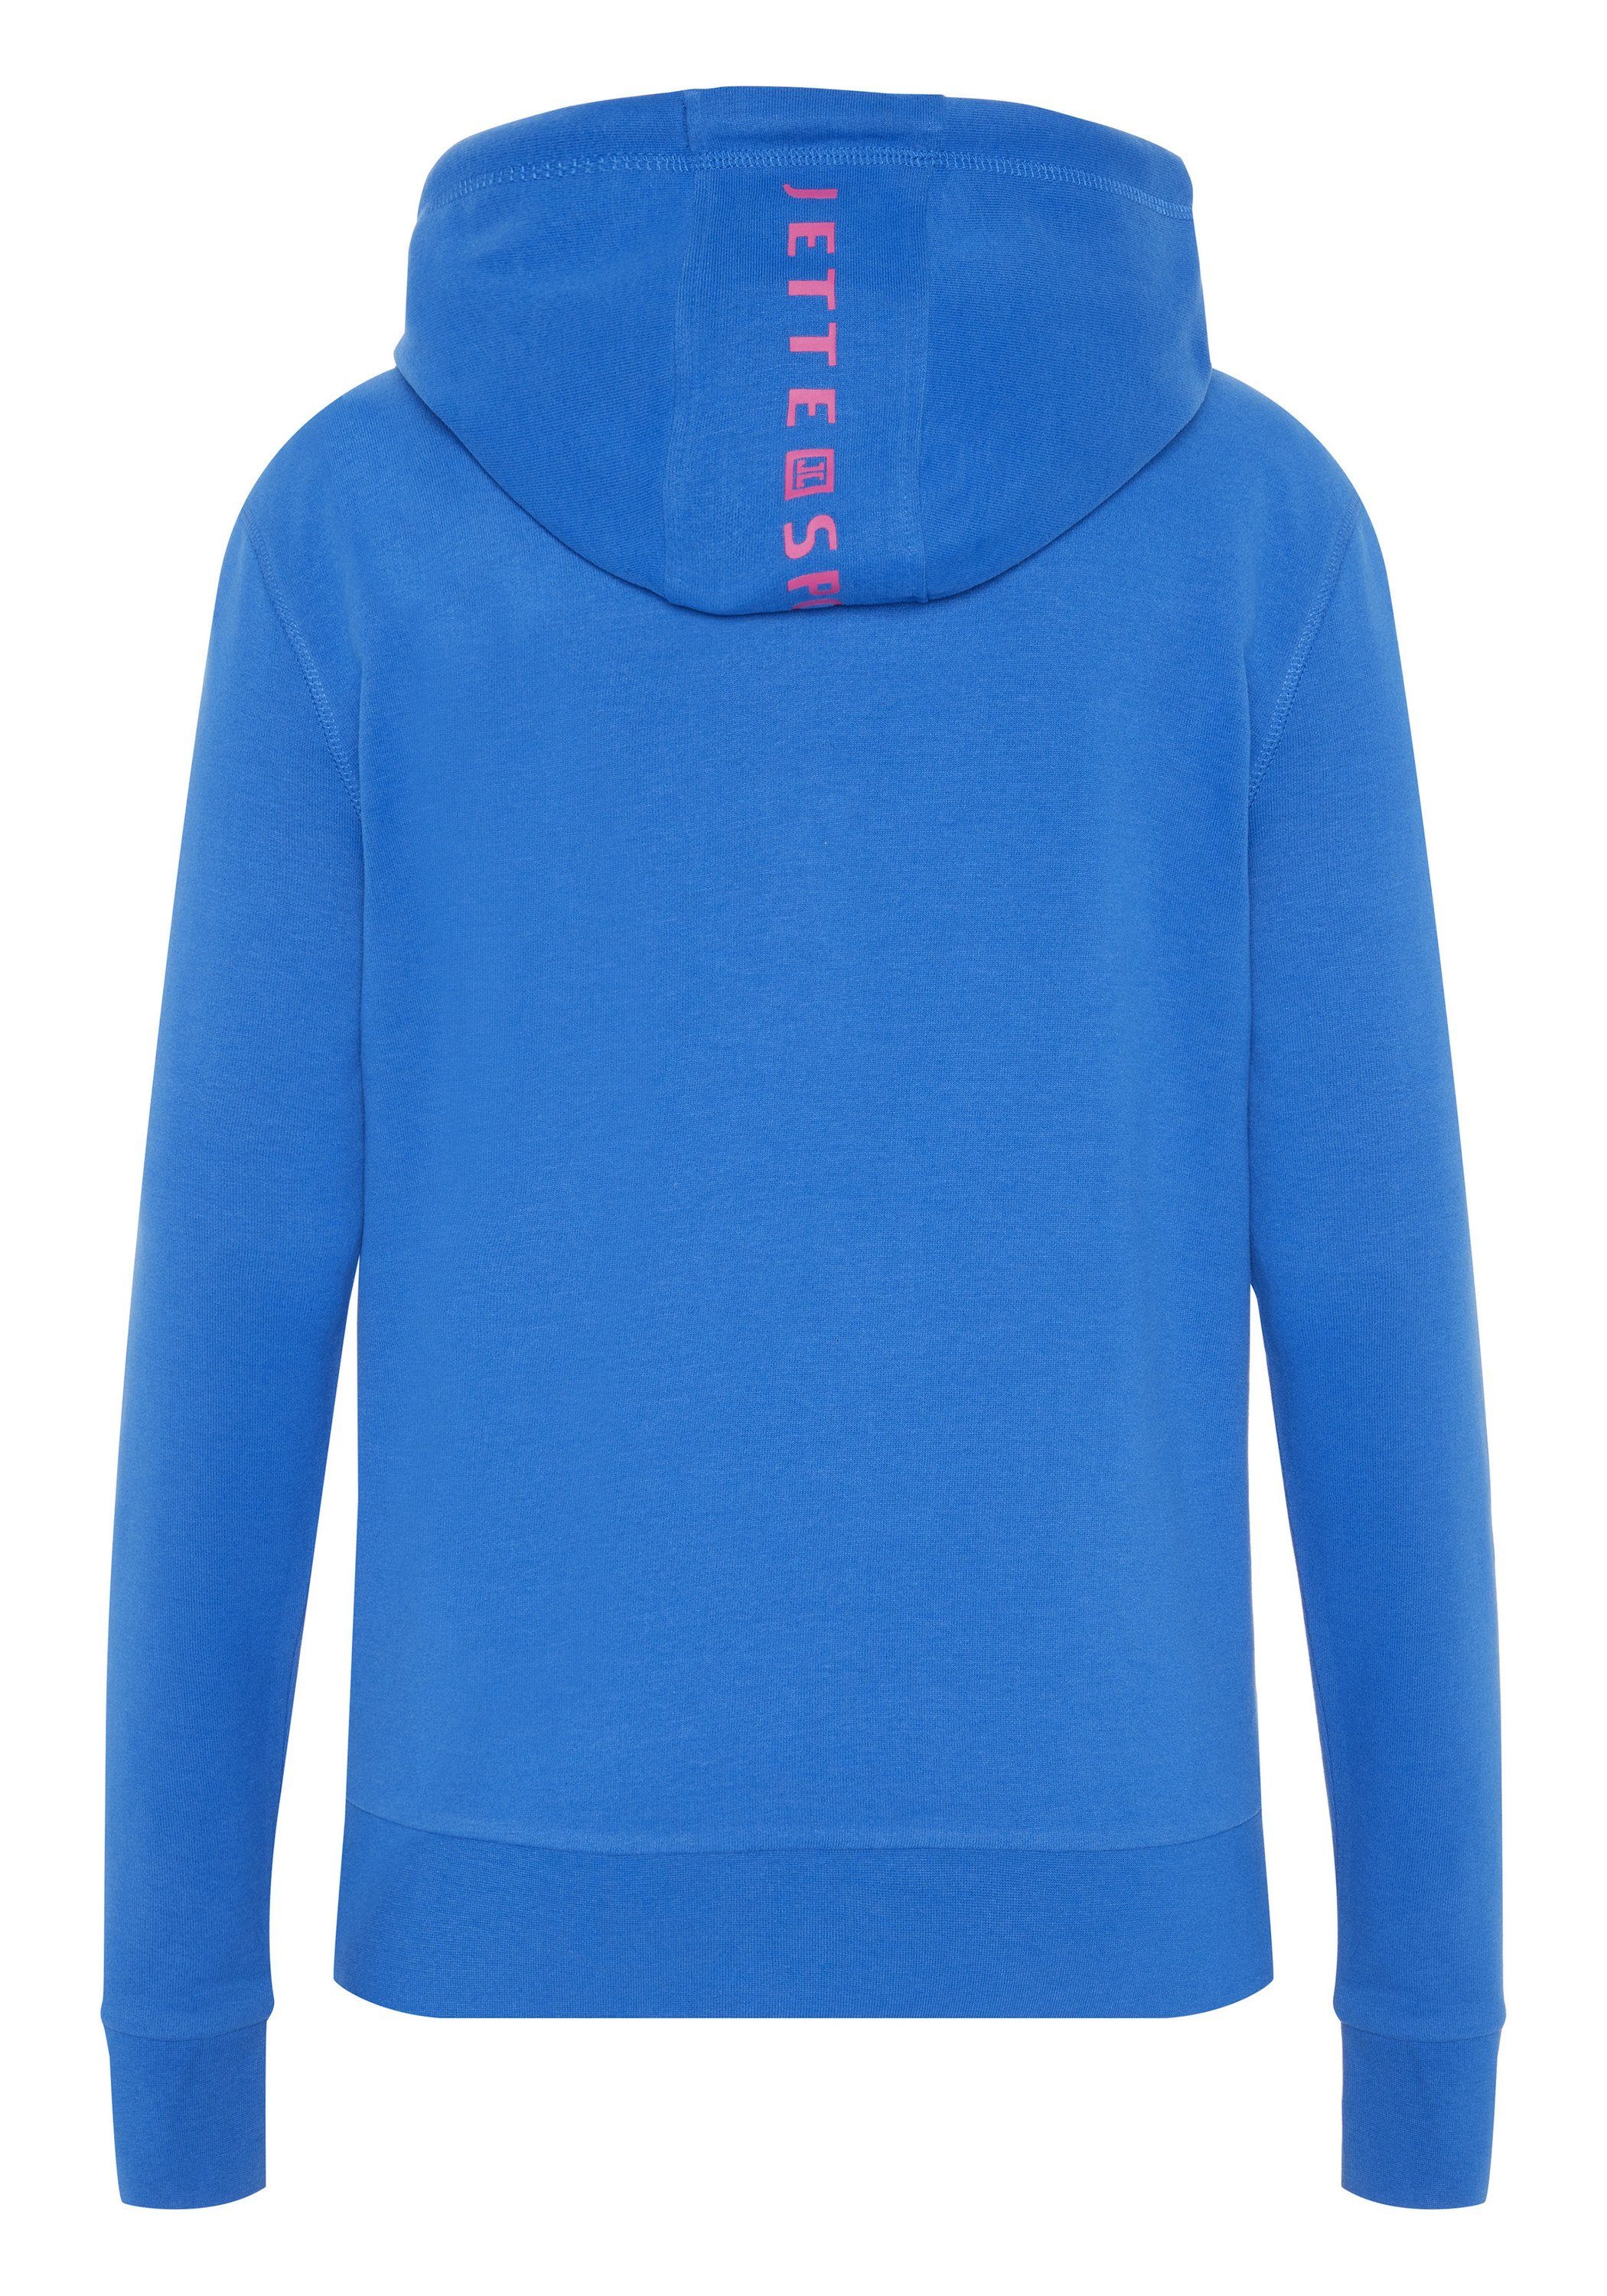 JETTE SPORT Kapuzensweatshirt mit kleinem Princess 19-4150 Blue Logodruck